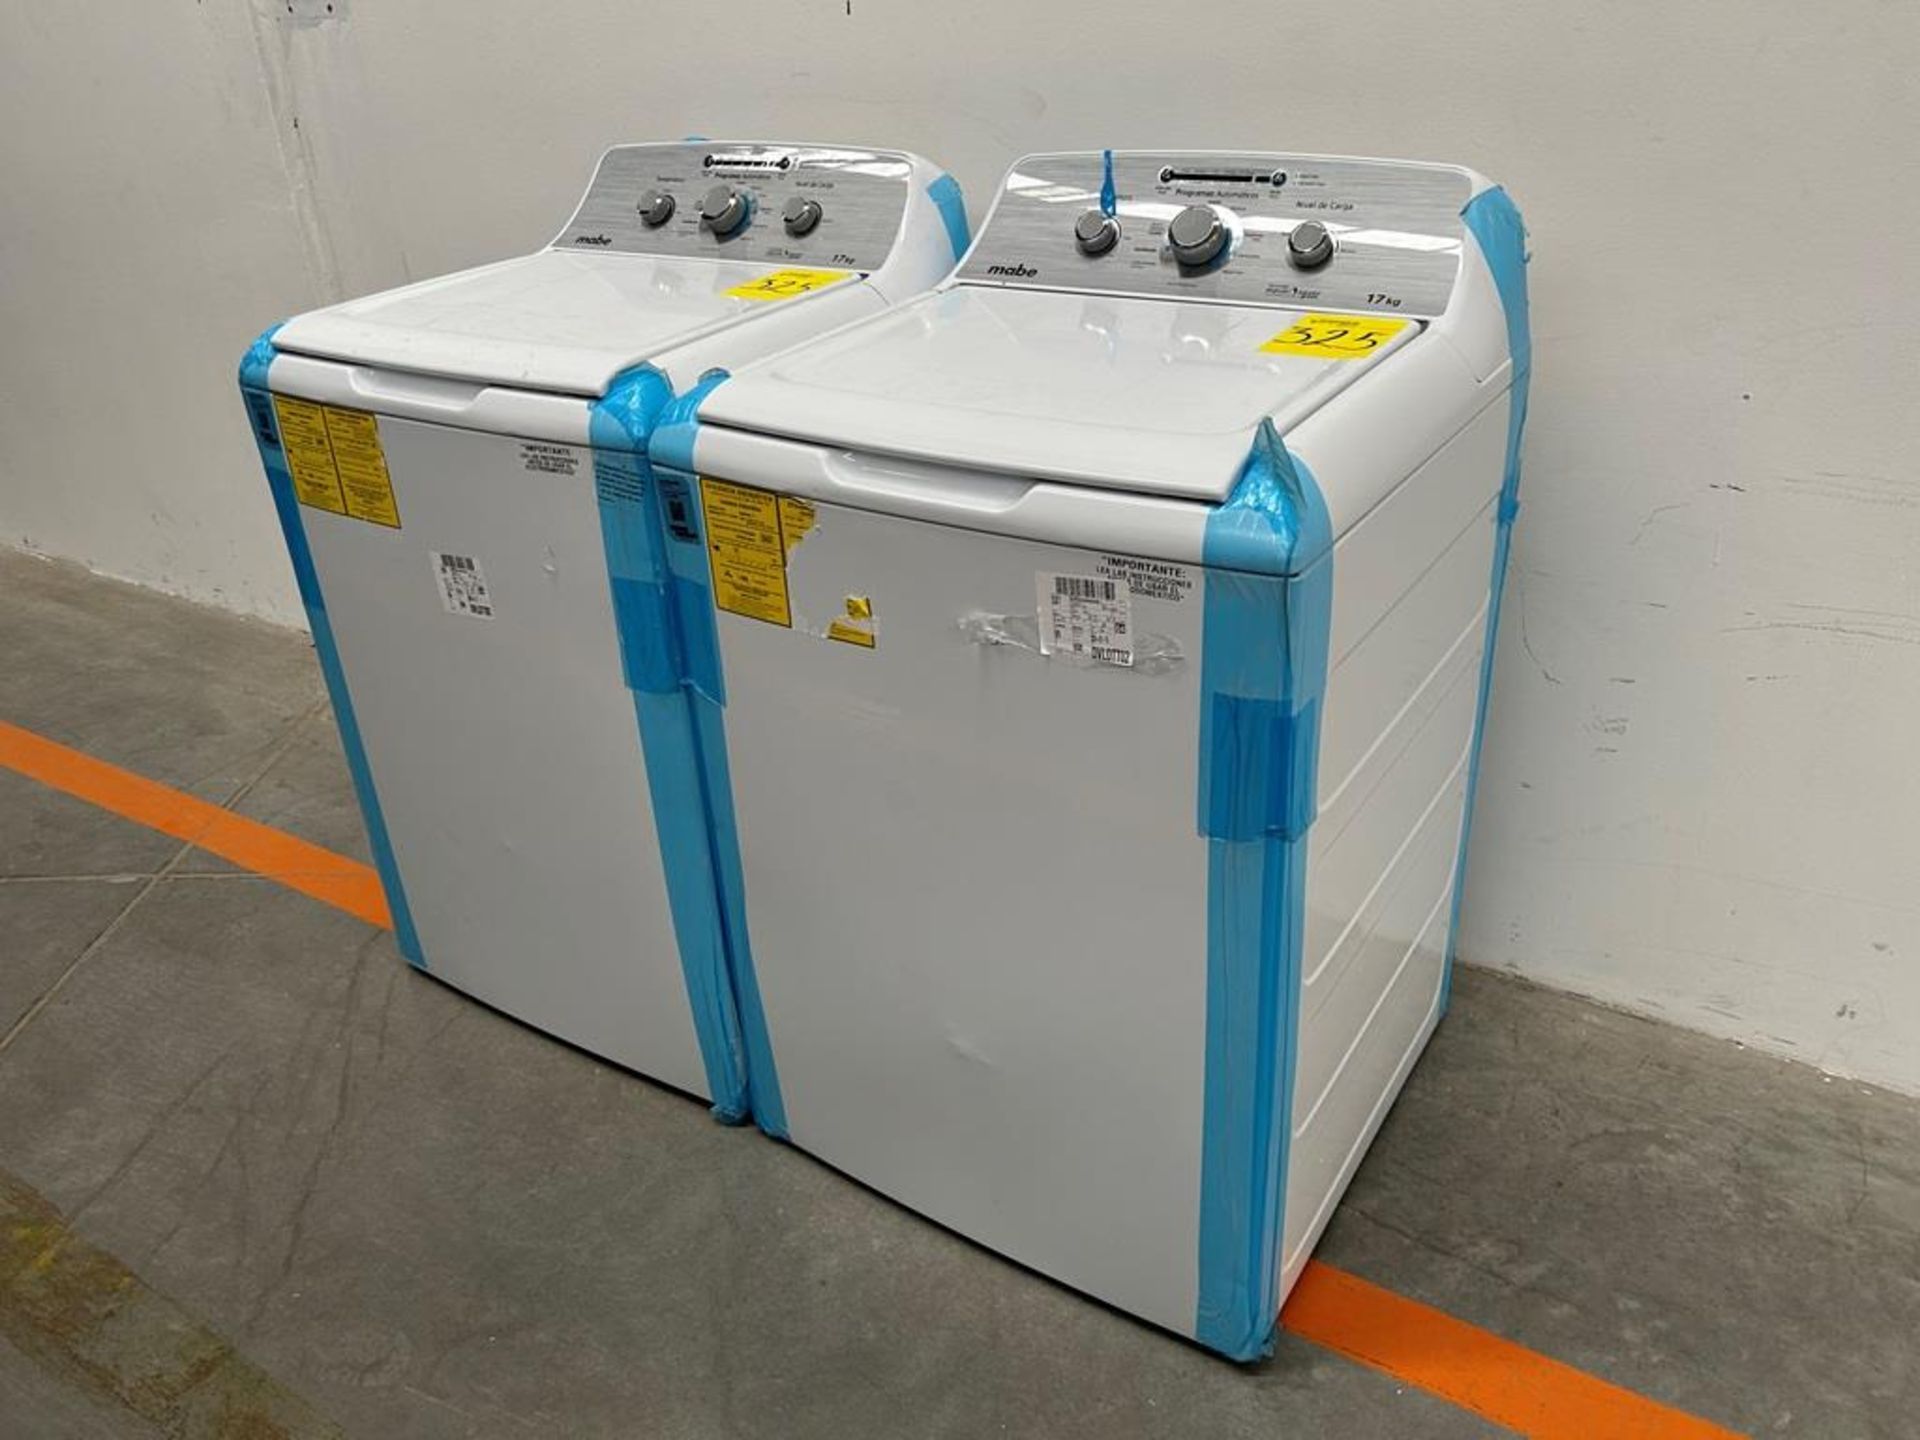 Lote de 2 lavadoras contiene: 1 Lavadora de 17 KG Marca MABE, Modelo LMA77113CBAB04, Serie S91210, - Image 2 of 10